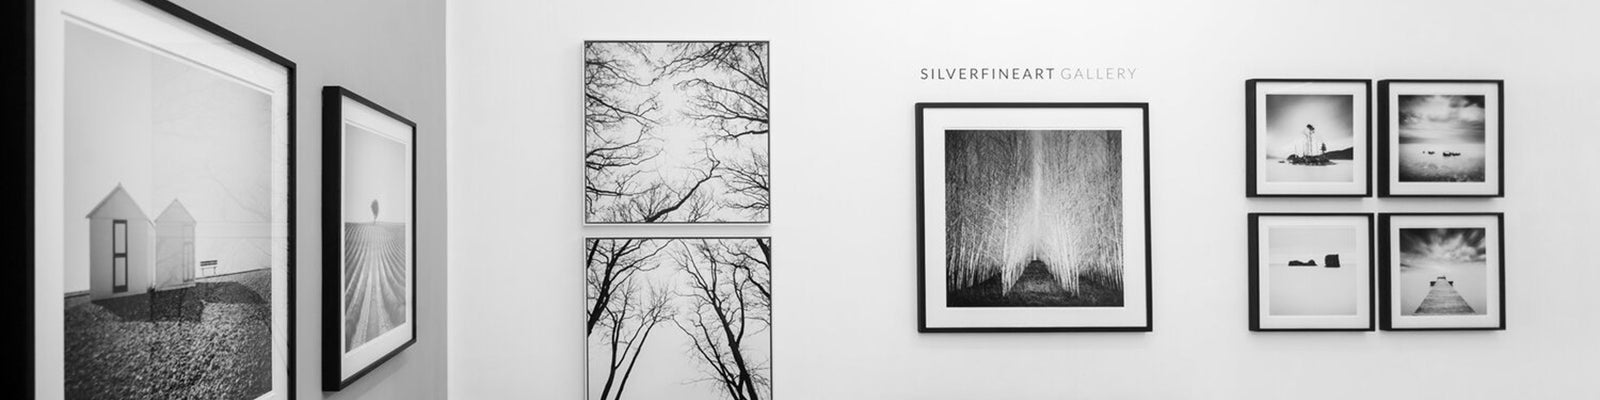 Silverfineart Gallery